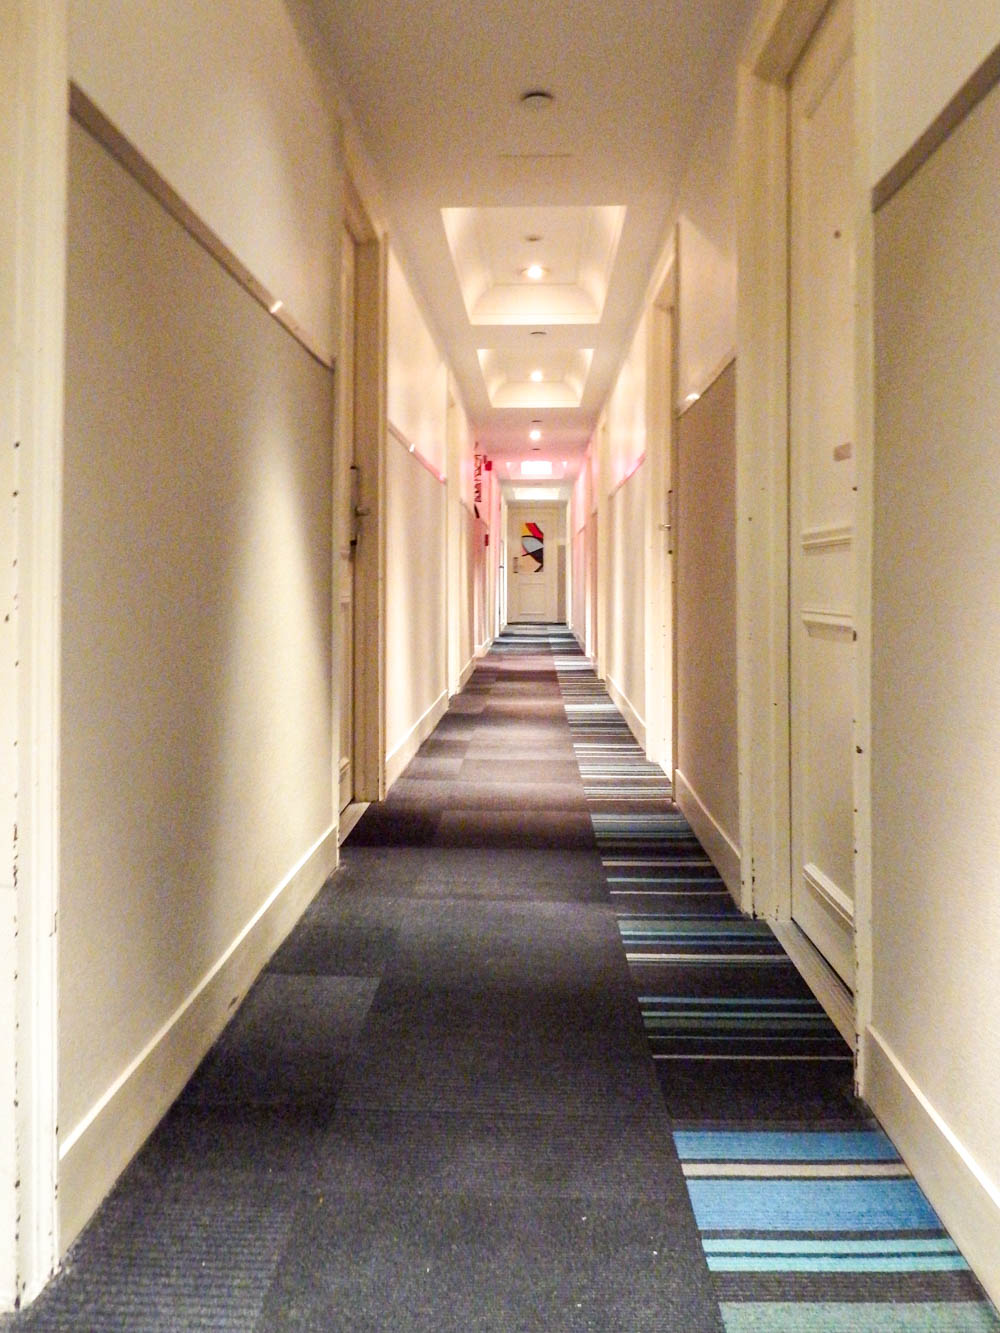 hotel hallway with beige walls and dark carpet